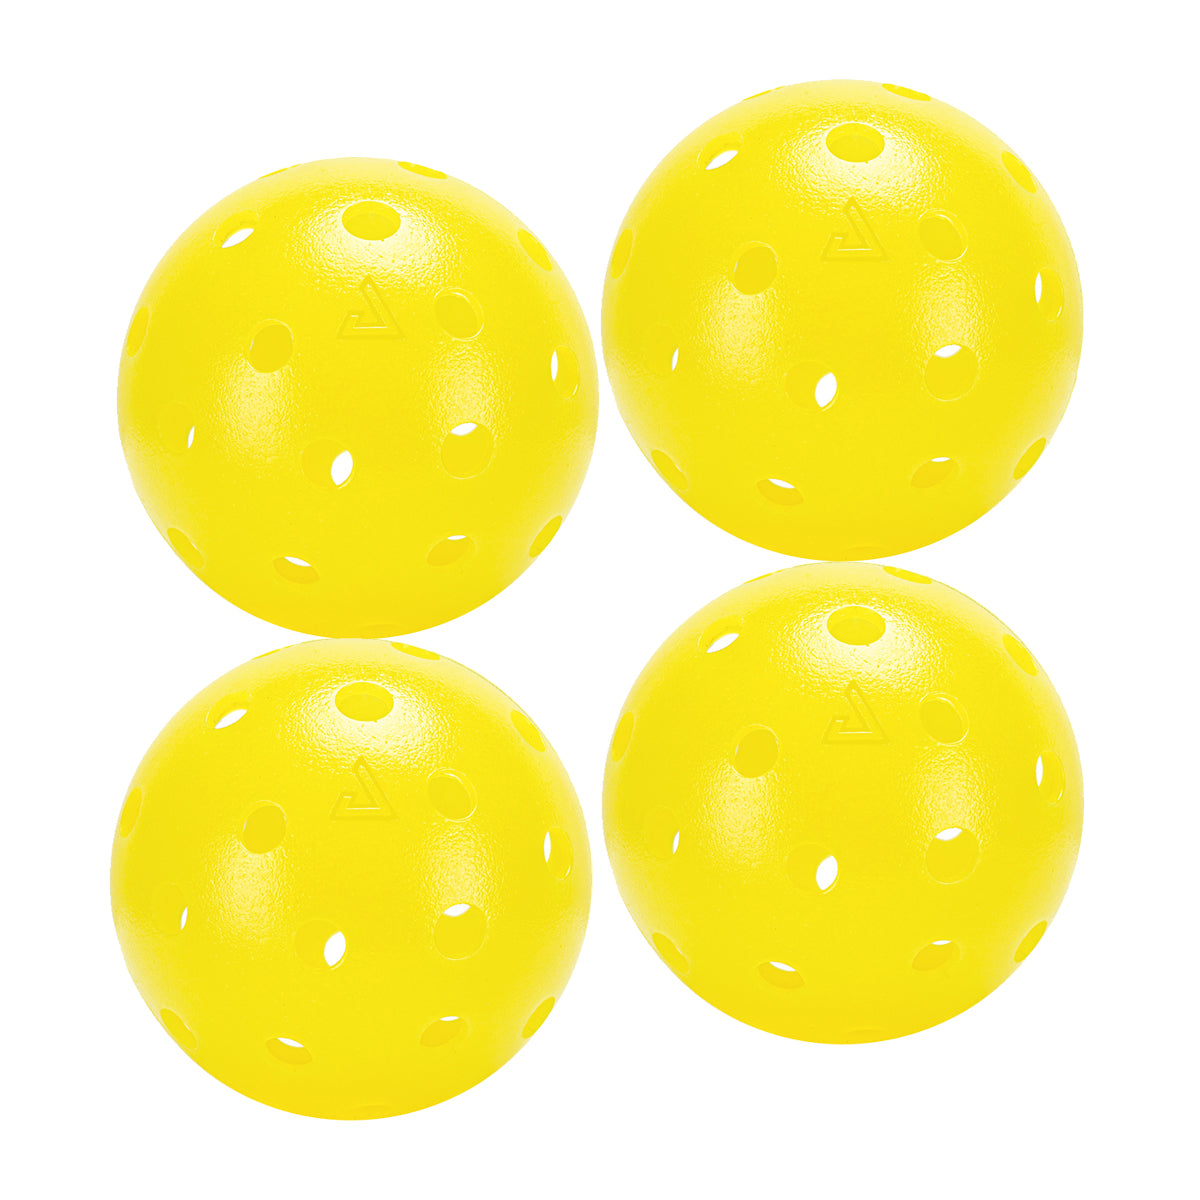 JOOLA Heleus Pickleball Ball - Erhältlich in den Mengen 4, 12, 25 und 100 Stück